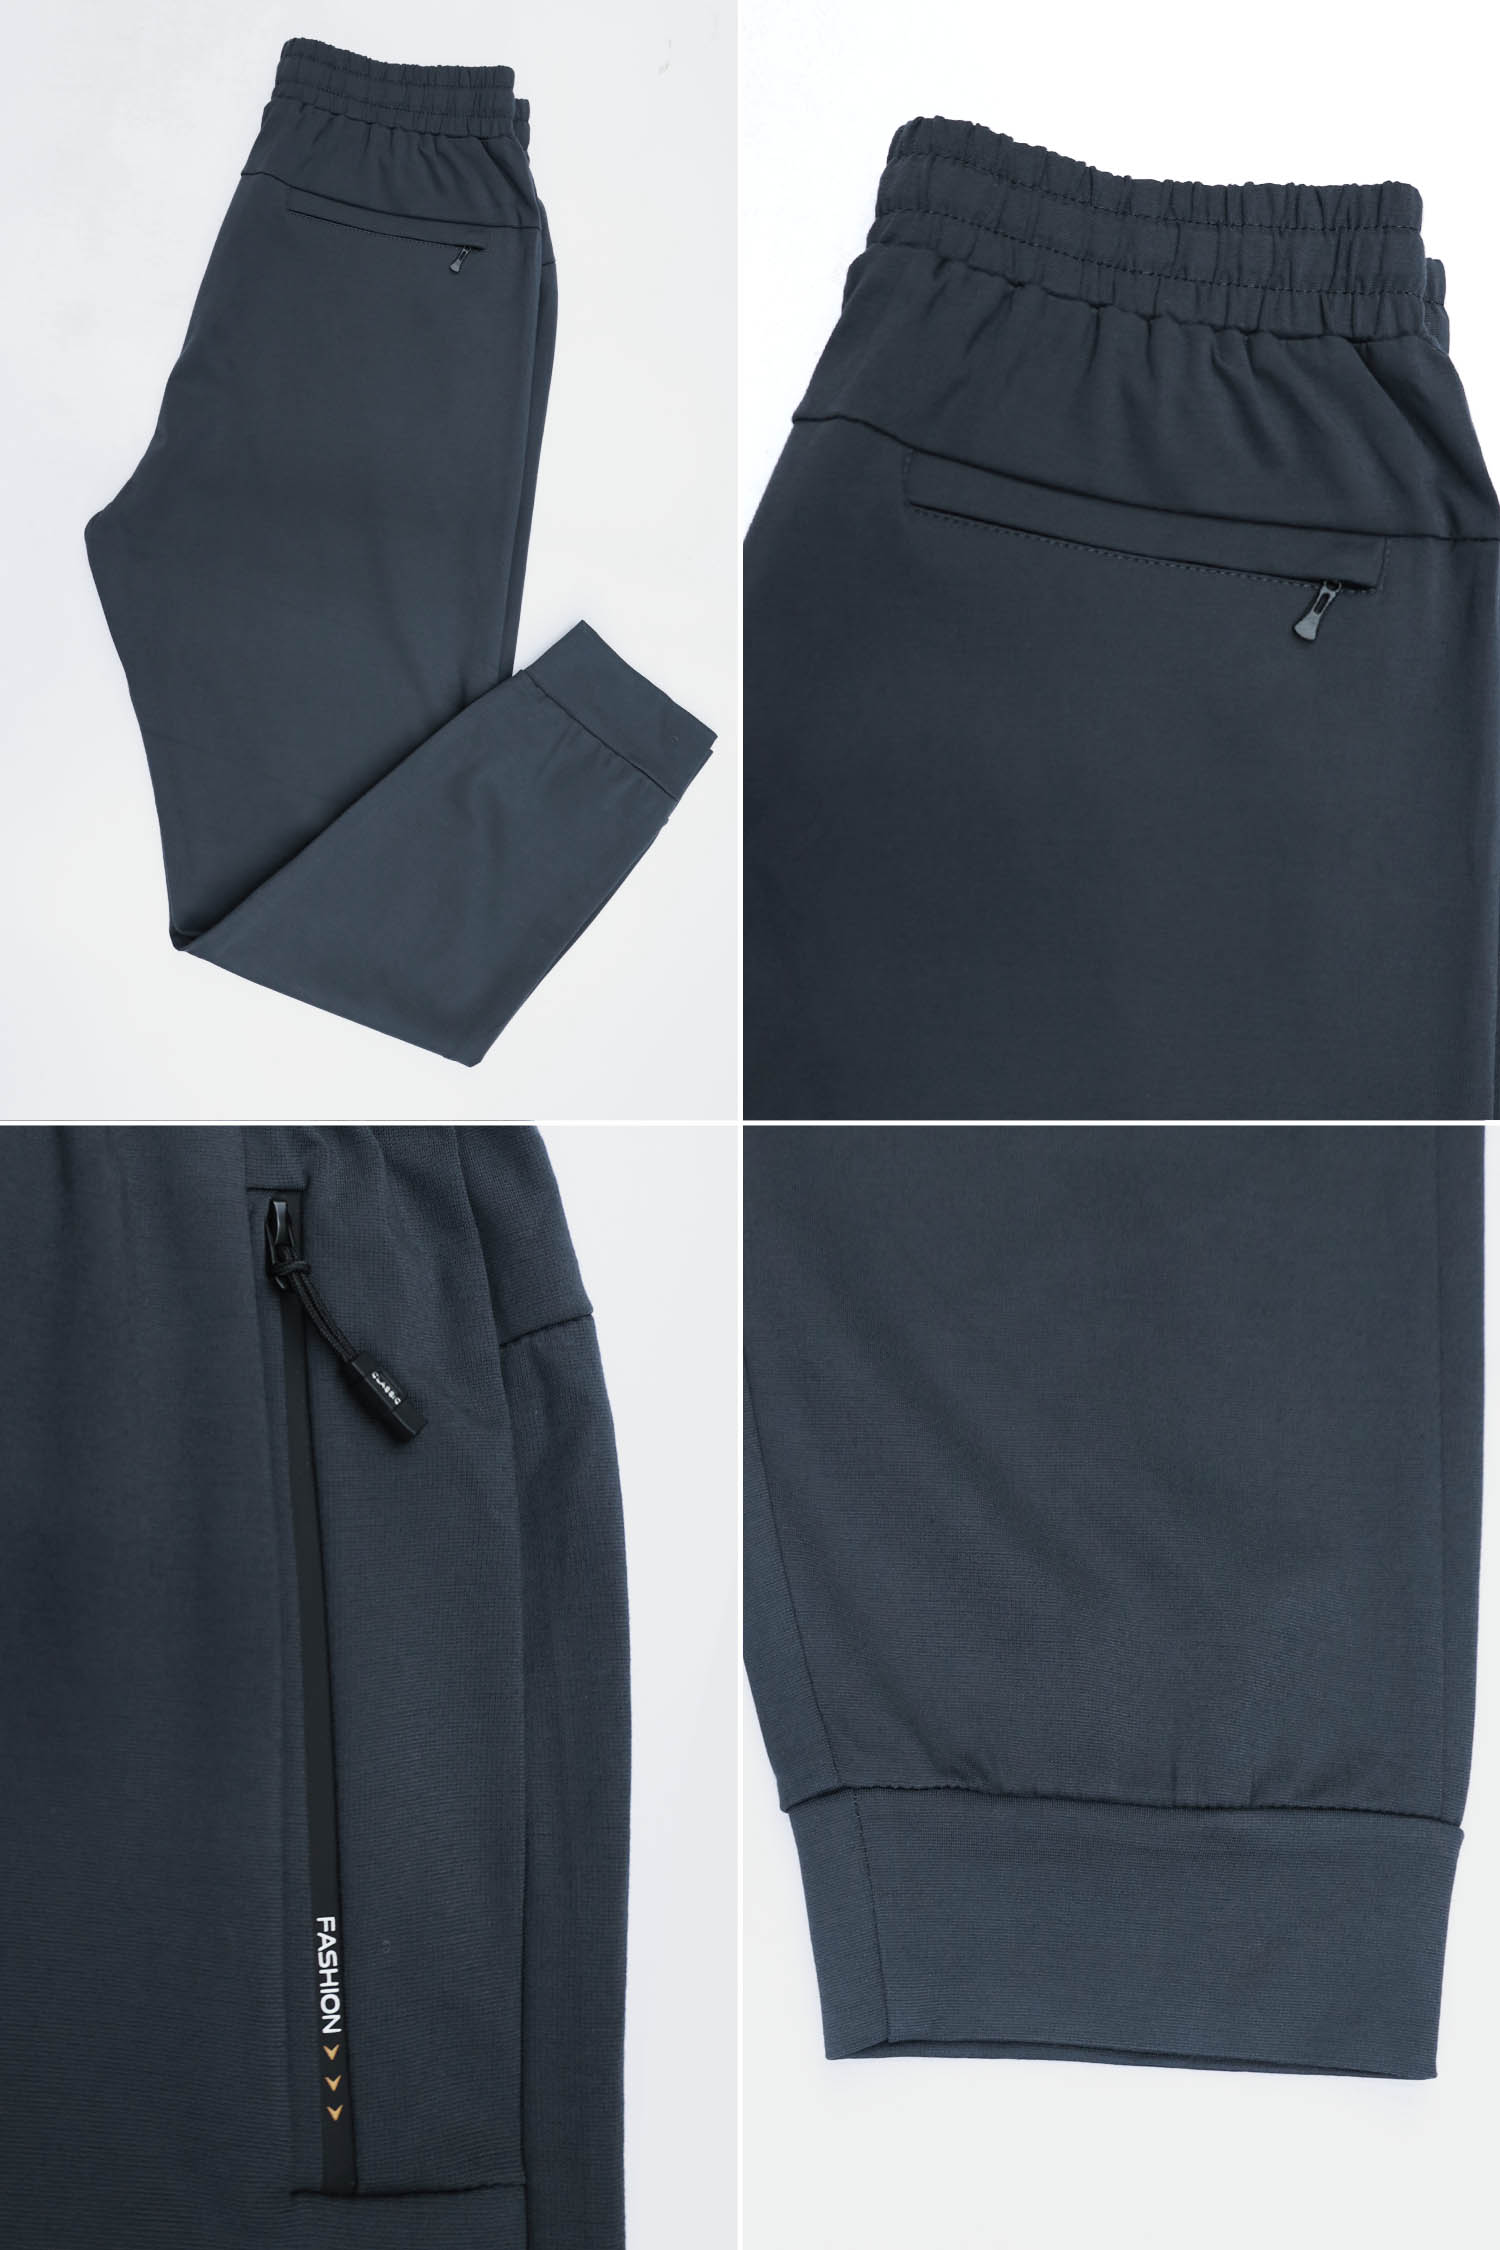 Nke Aplic Logo Men Branded Trouser In Dark Grey